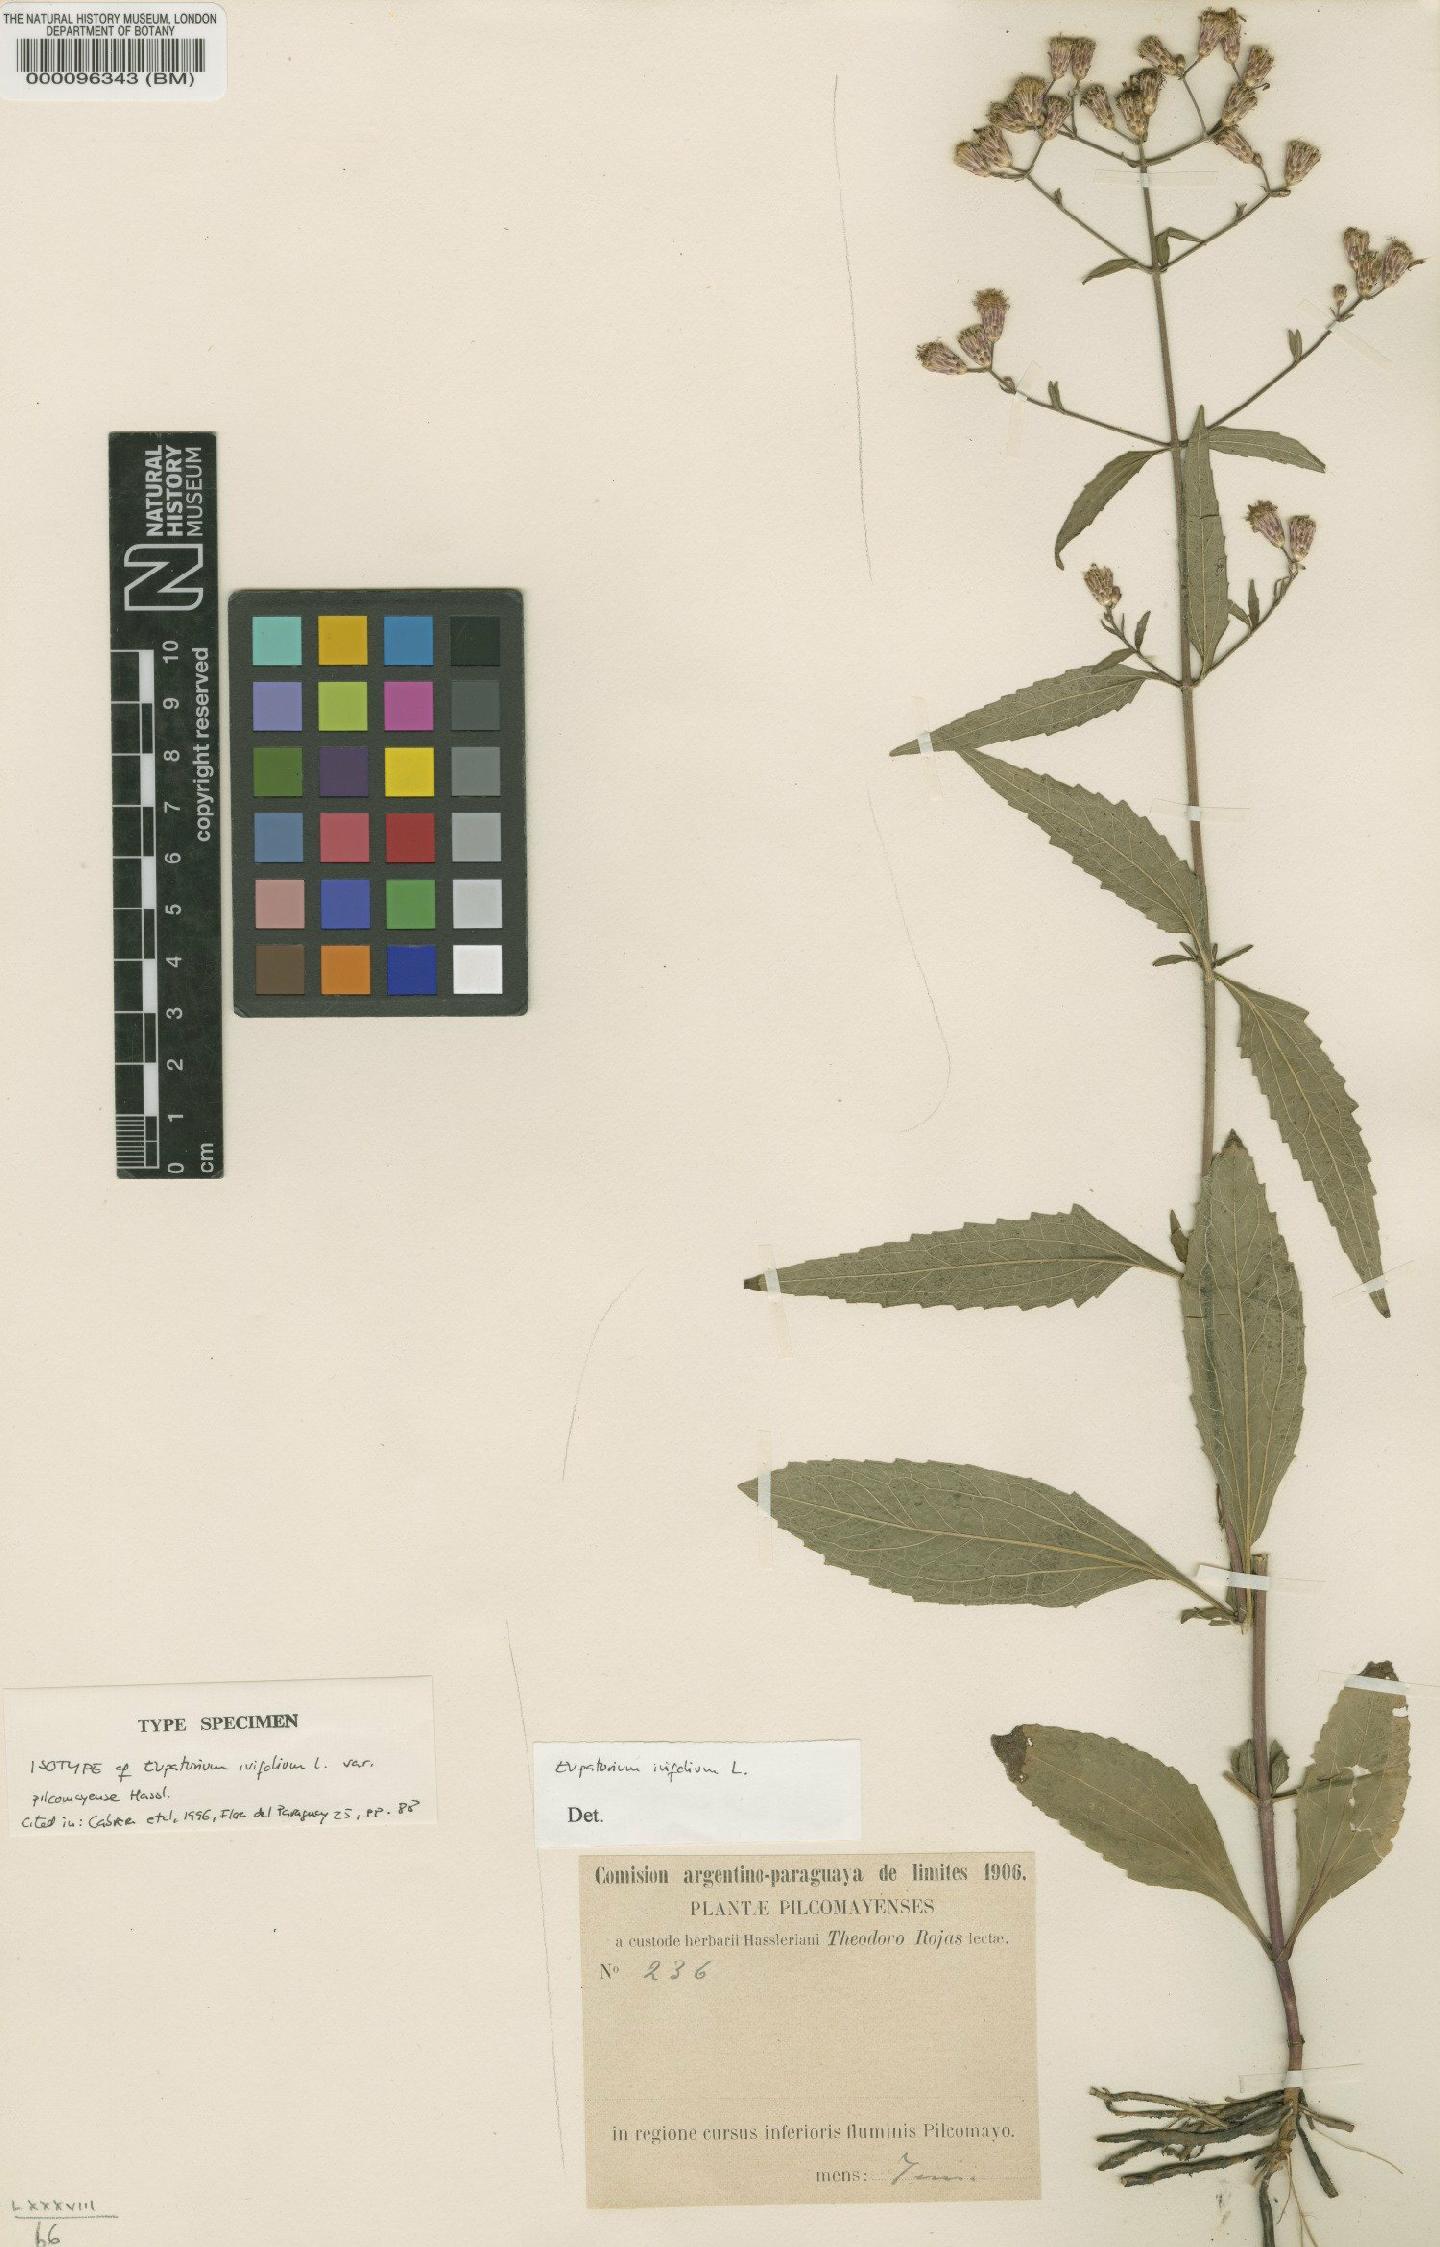 To NHMUK collection (Eupatorium ivifolium var. pilcomayense Hassl.; Isotype; NHMUK:ecatalogue:4566770)